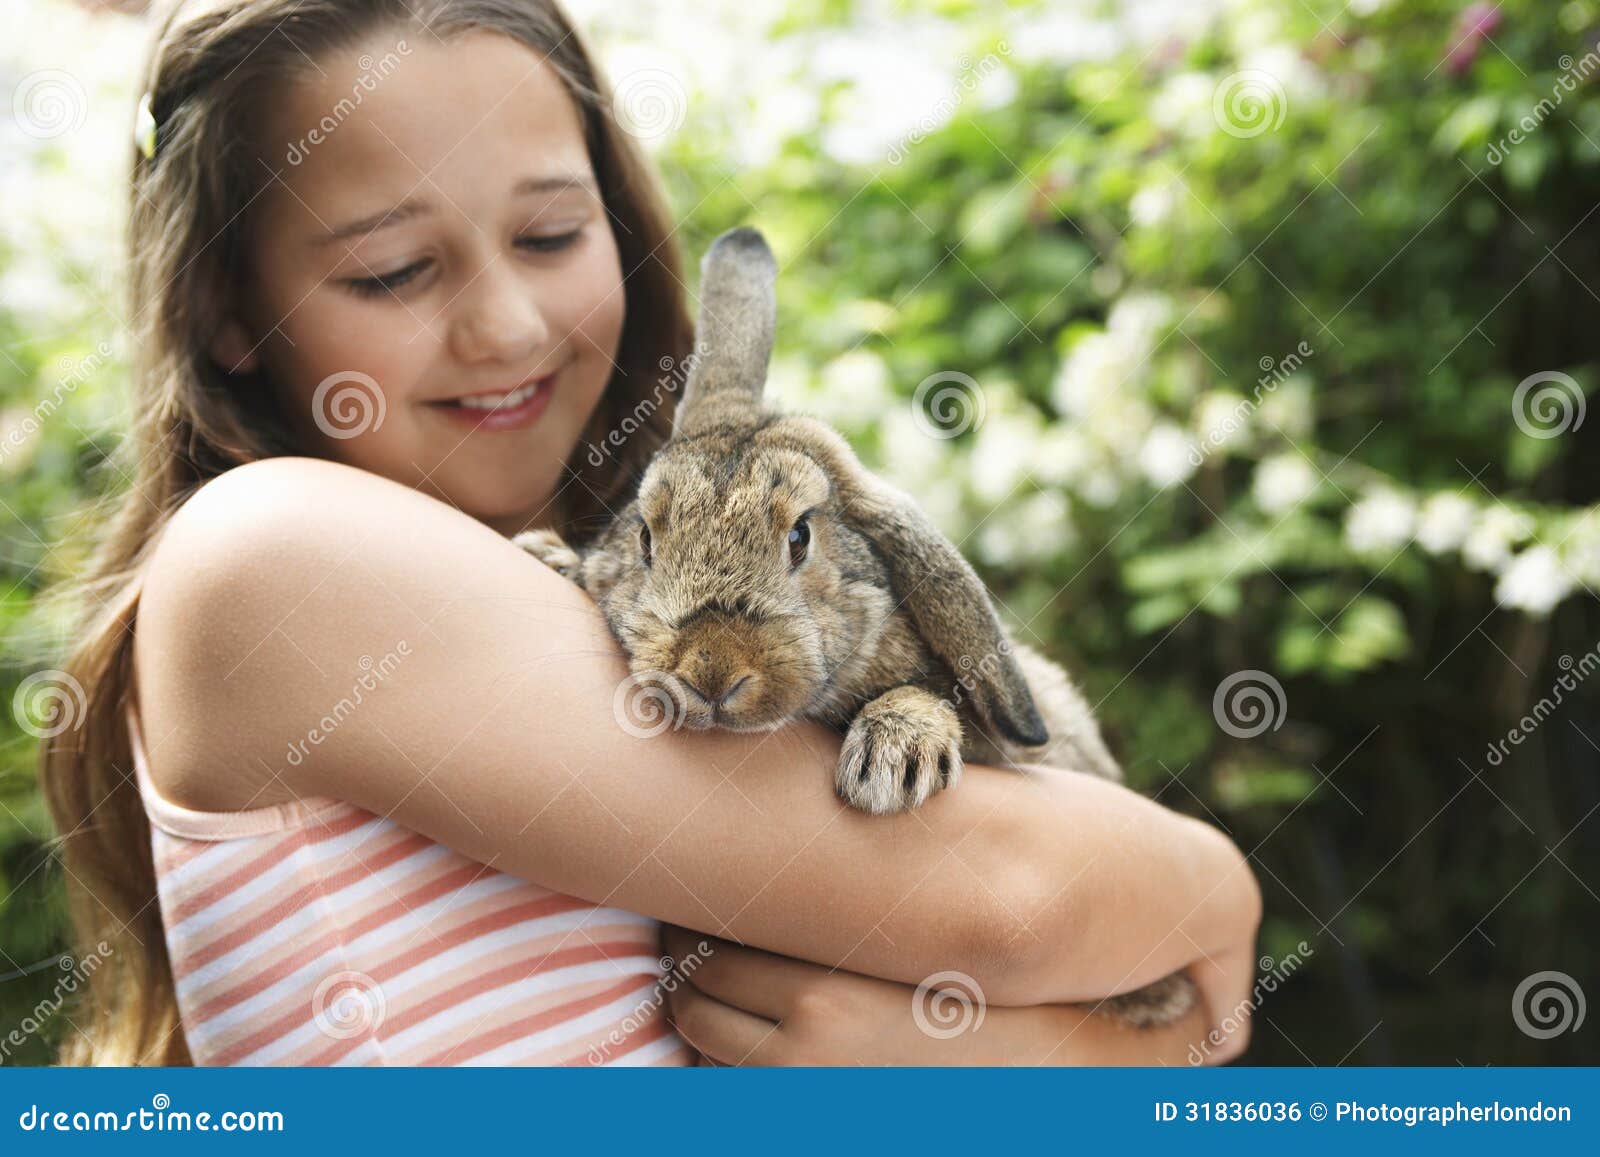 抱着小兔子的小女孩图片可爱电脑桌面壁纸-壁纸图片大全